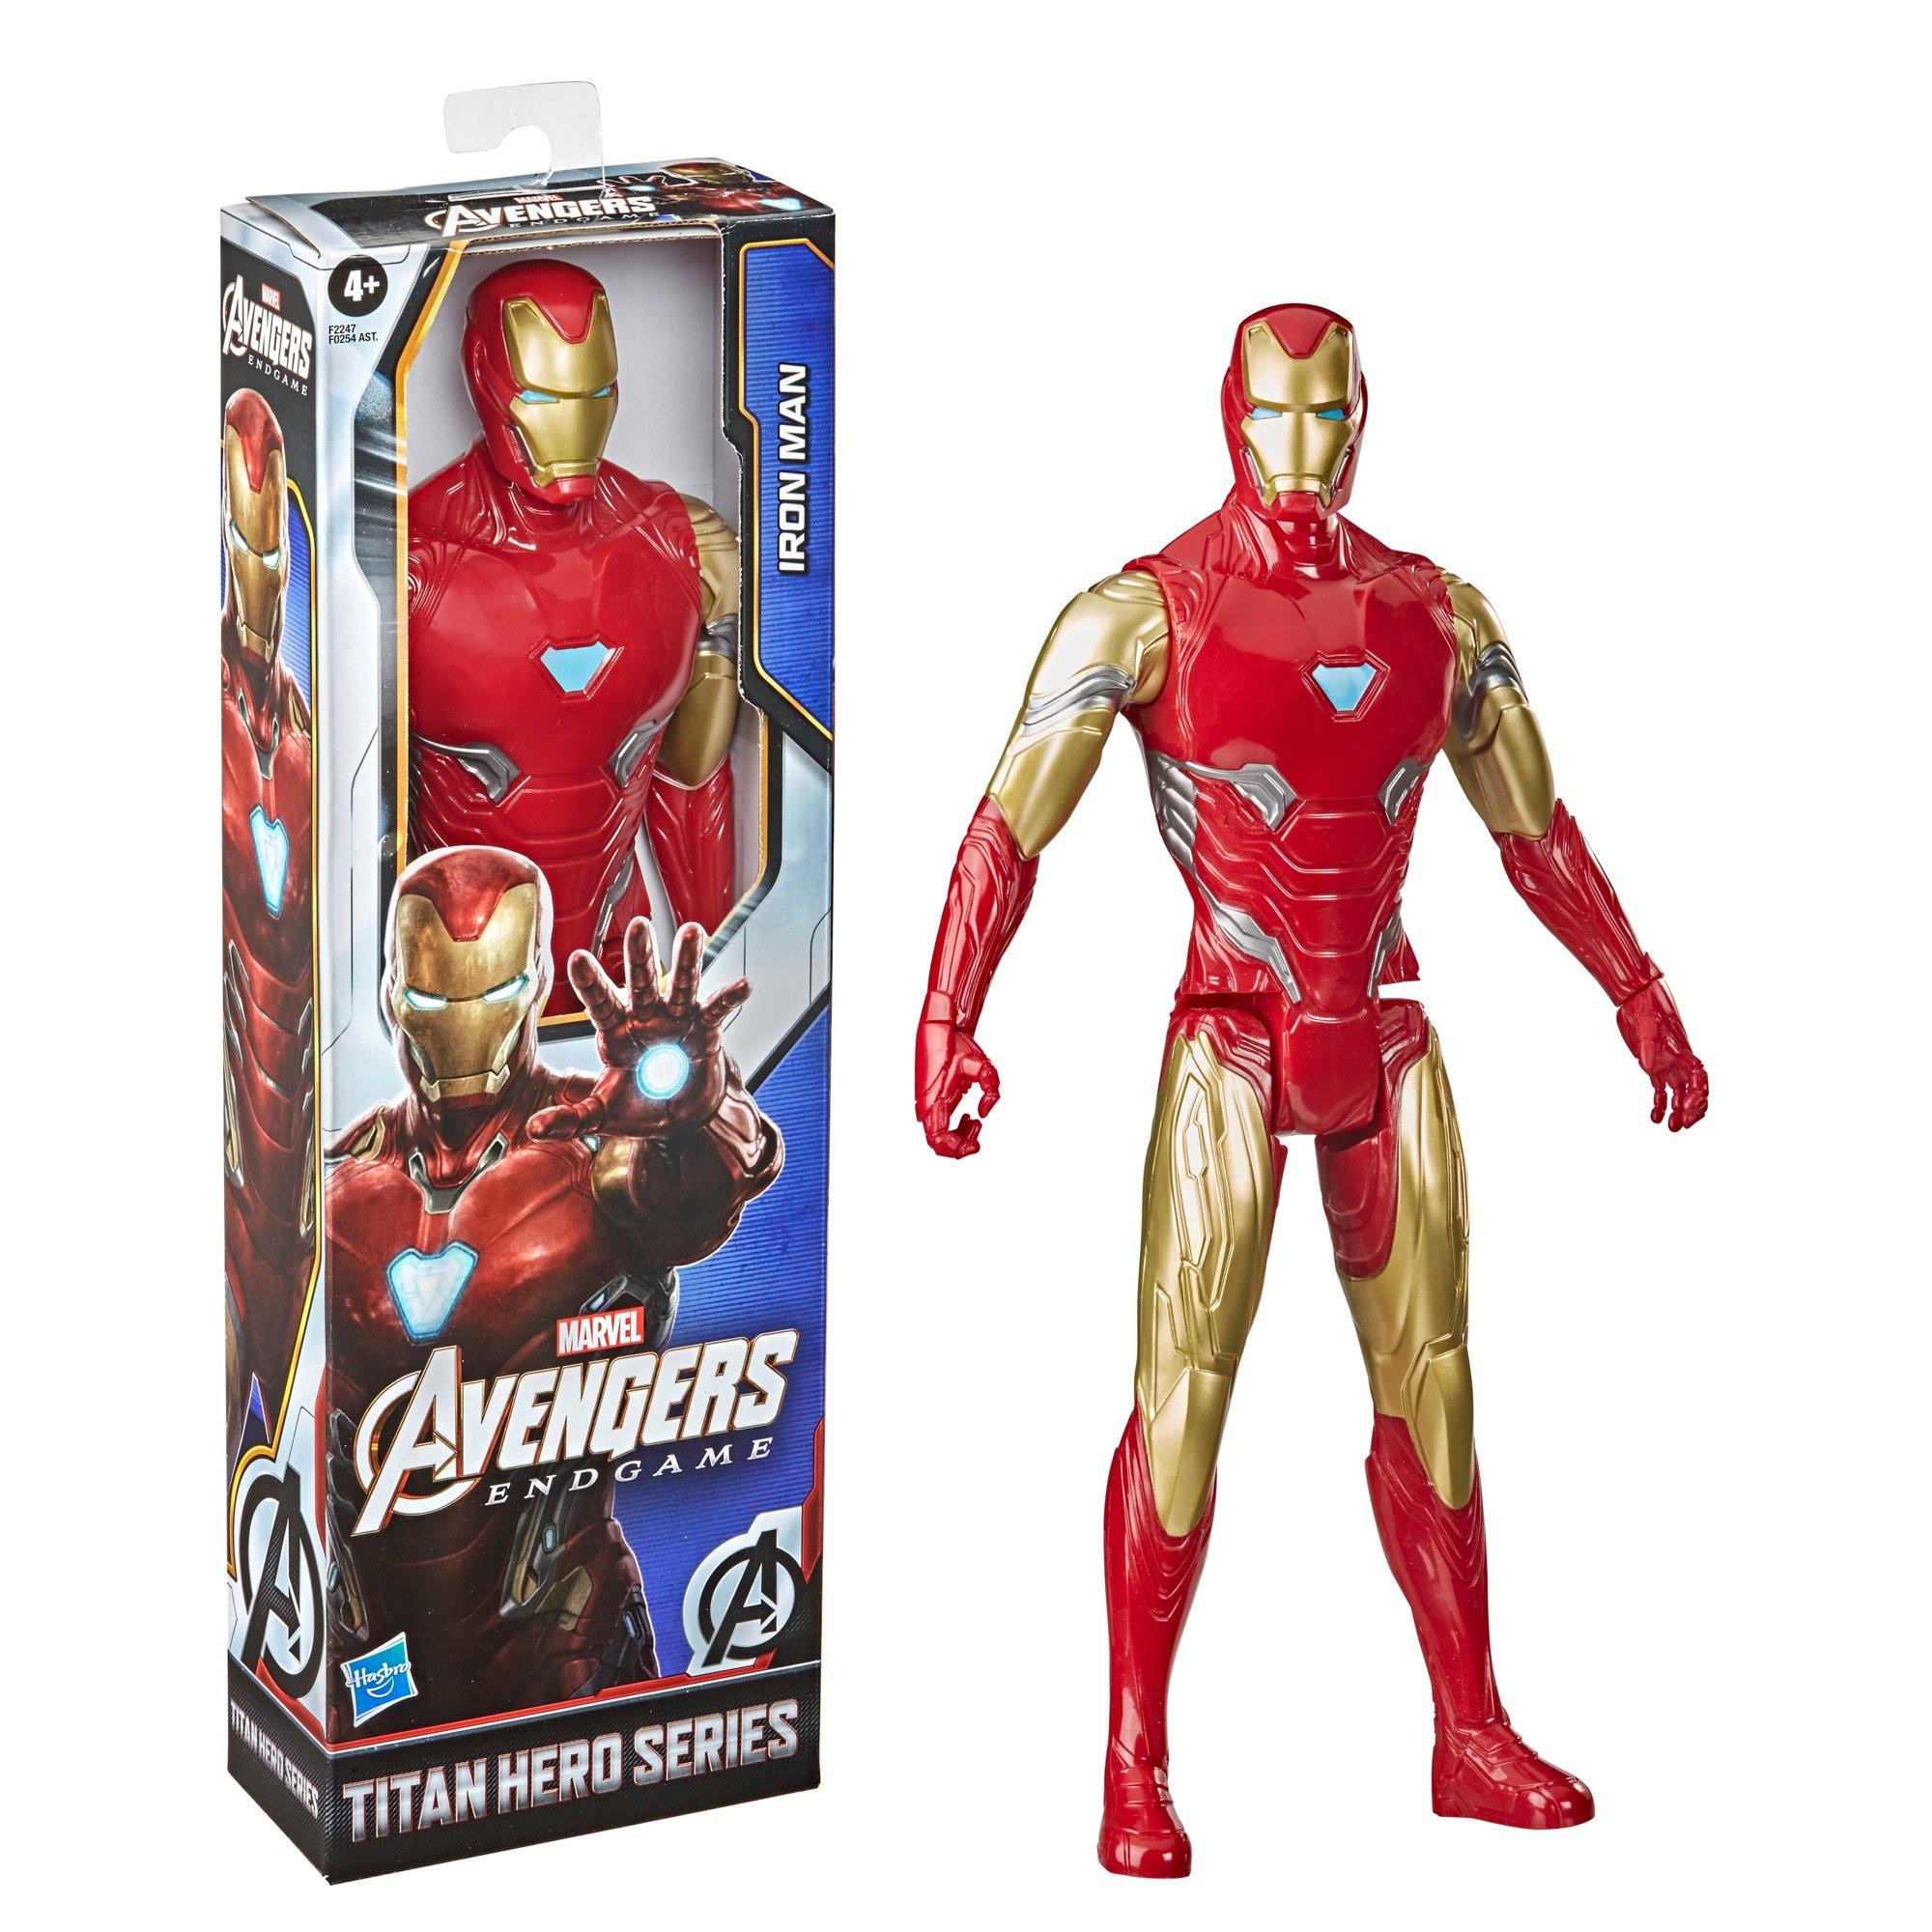 12" Details about   Marvel Avengers Titan Hero Series Captain Marvel Action Figure 